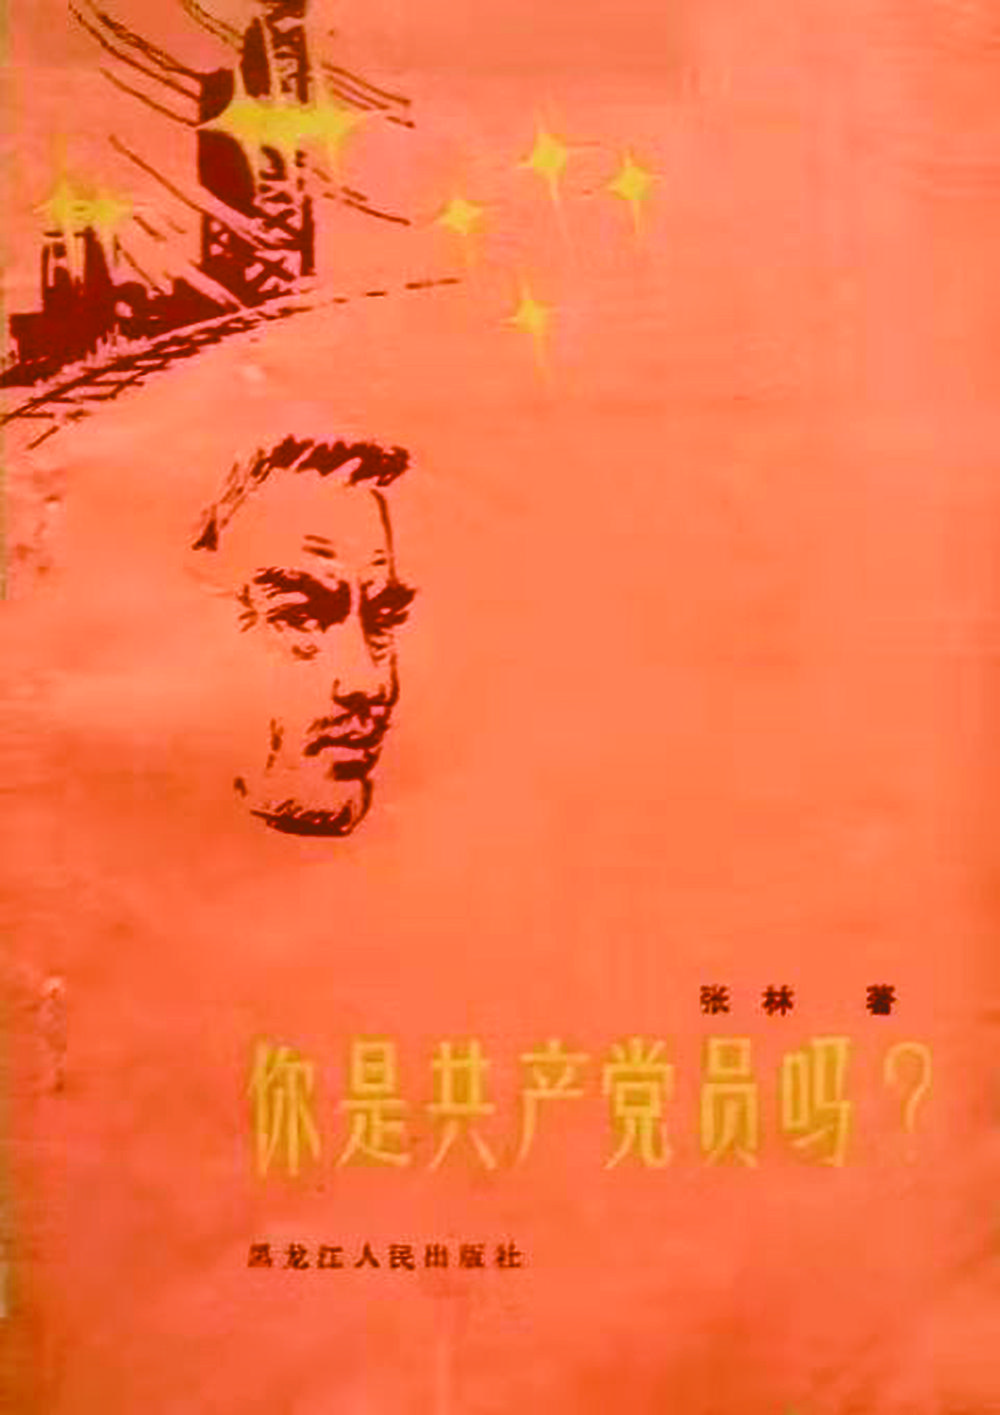 铁路作家张林和他的作品